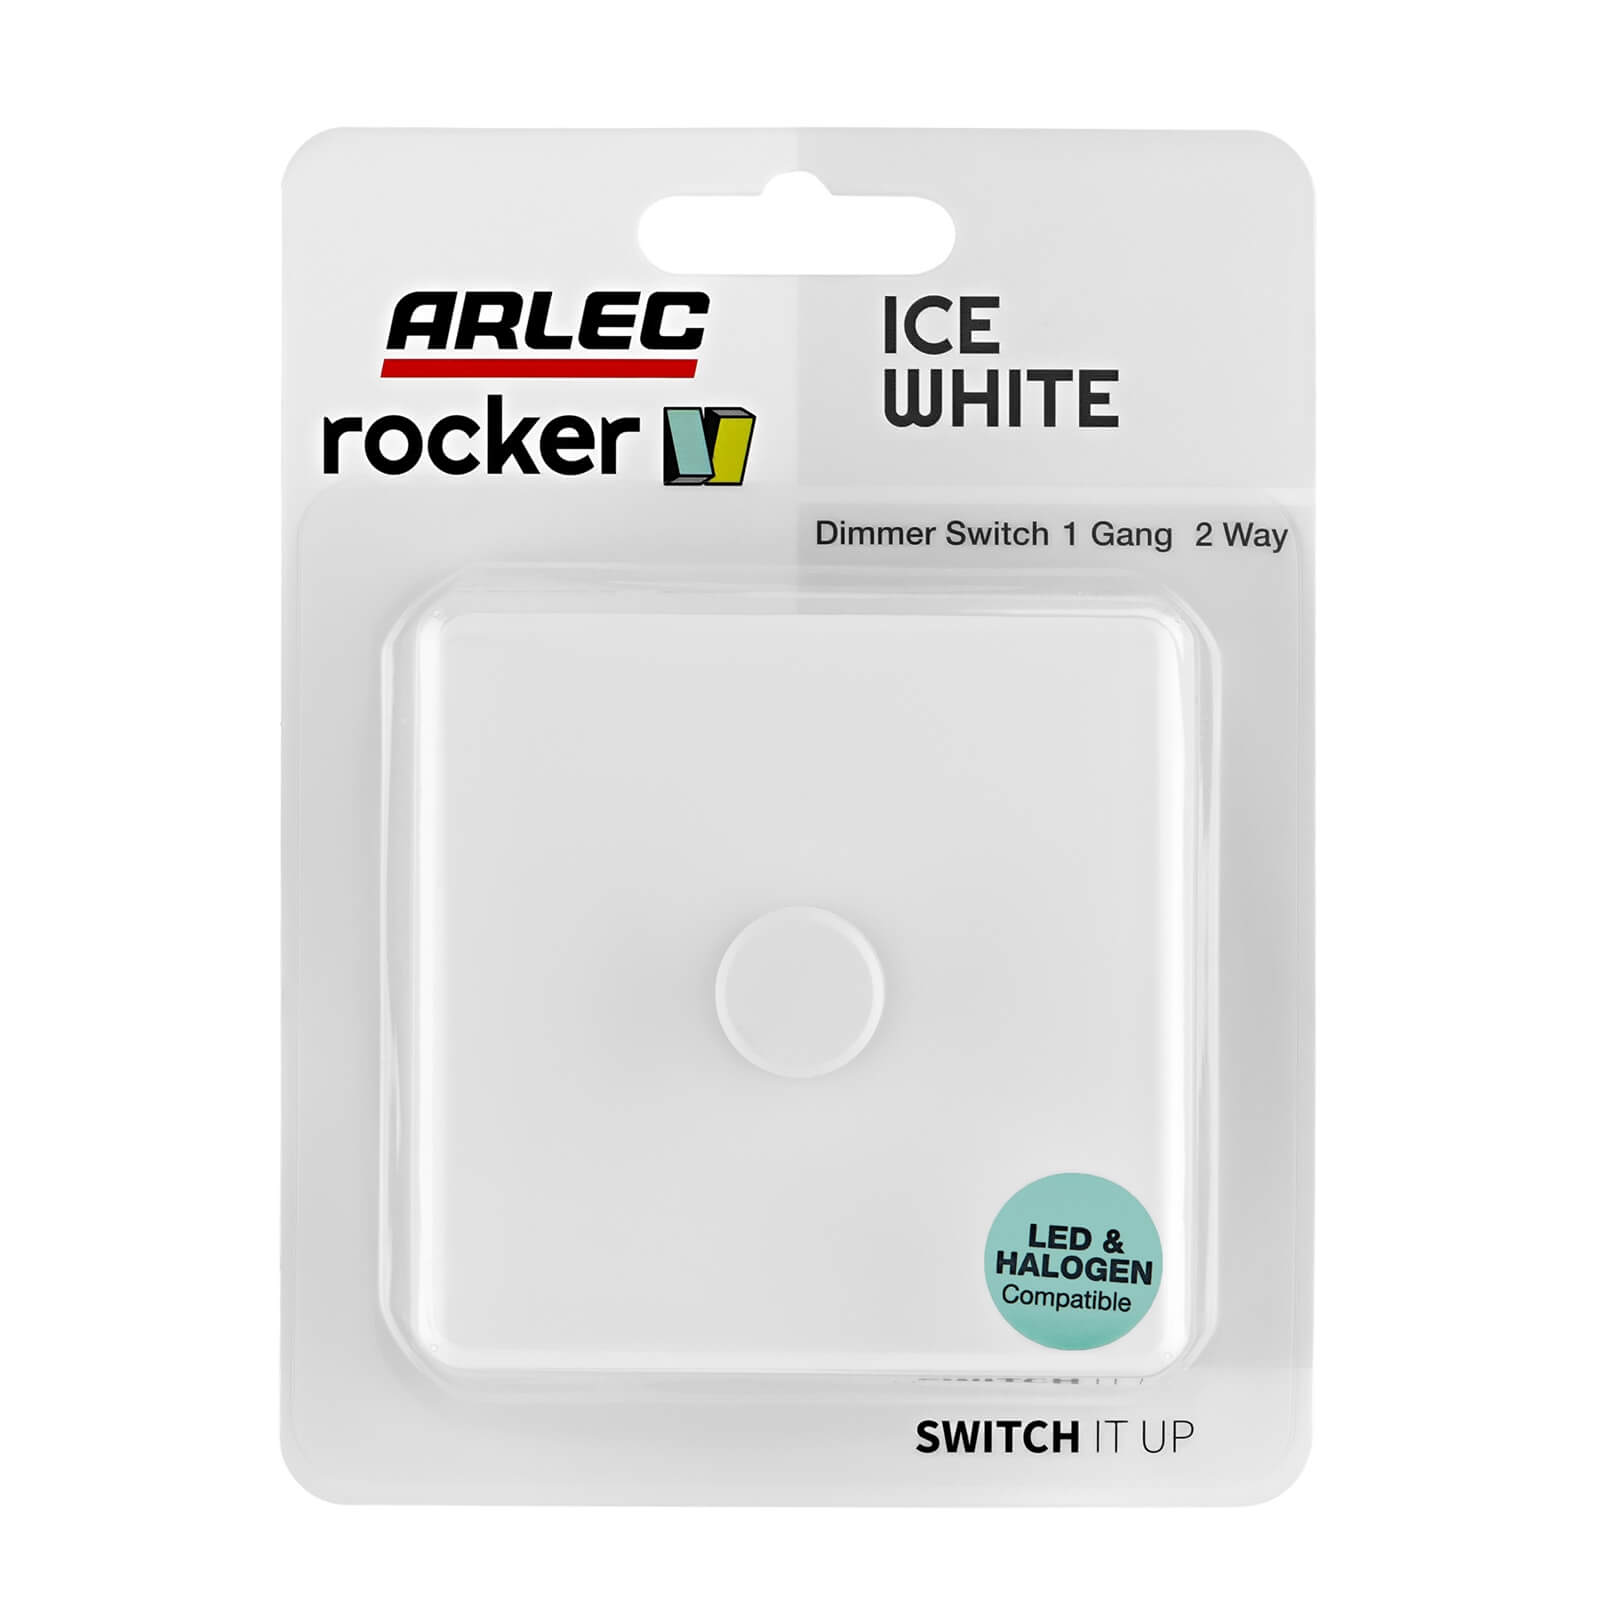 Arlec Rocker 1 Gang 2 Way Ice White Dimmer switch